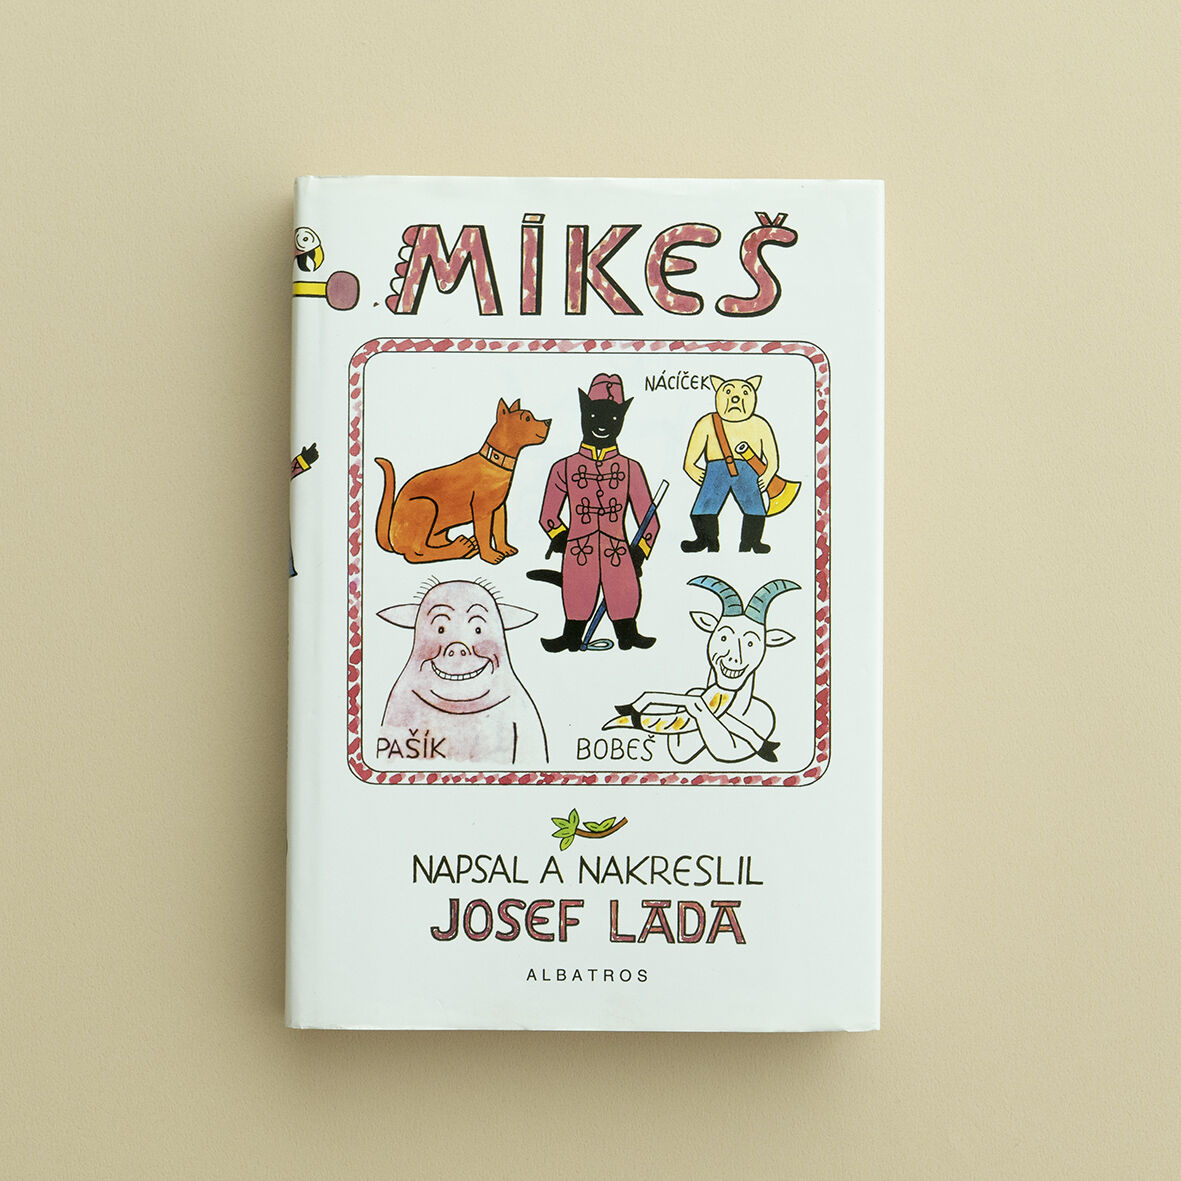 『Mikes』（黒ねこミケシュのぼうけん）ヨゼフ・ラダ（Josef Lada